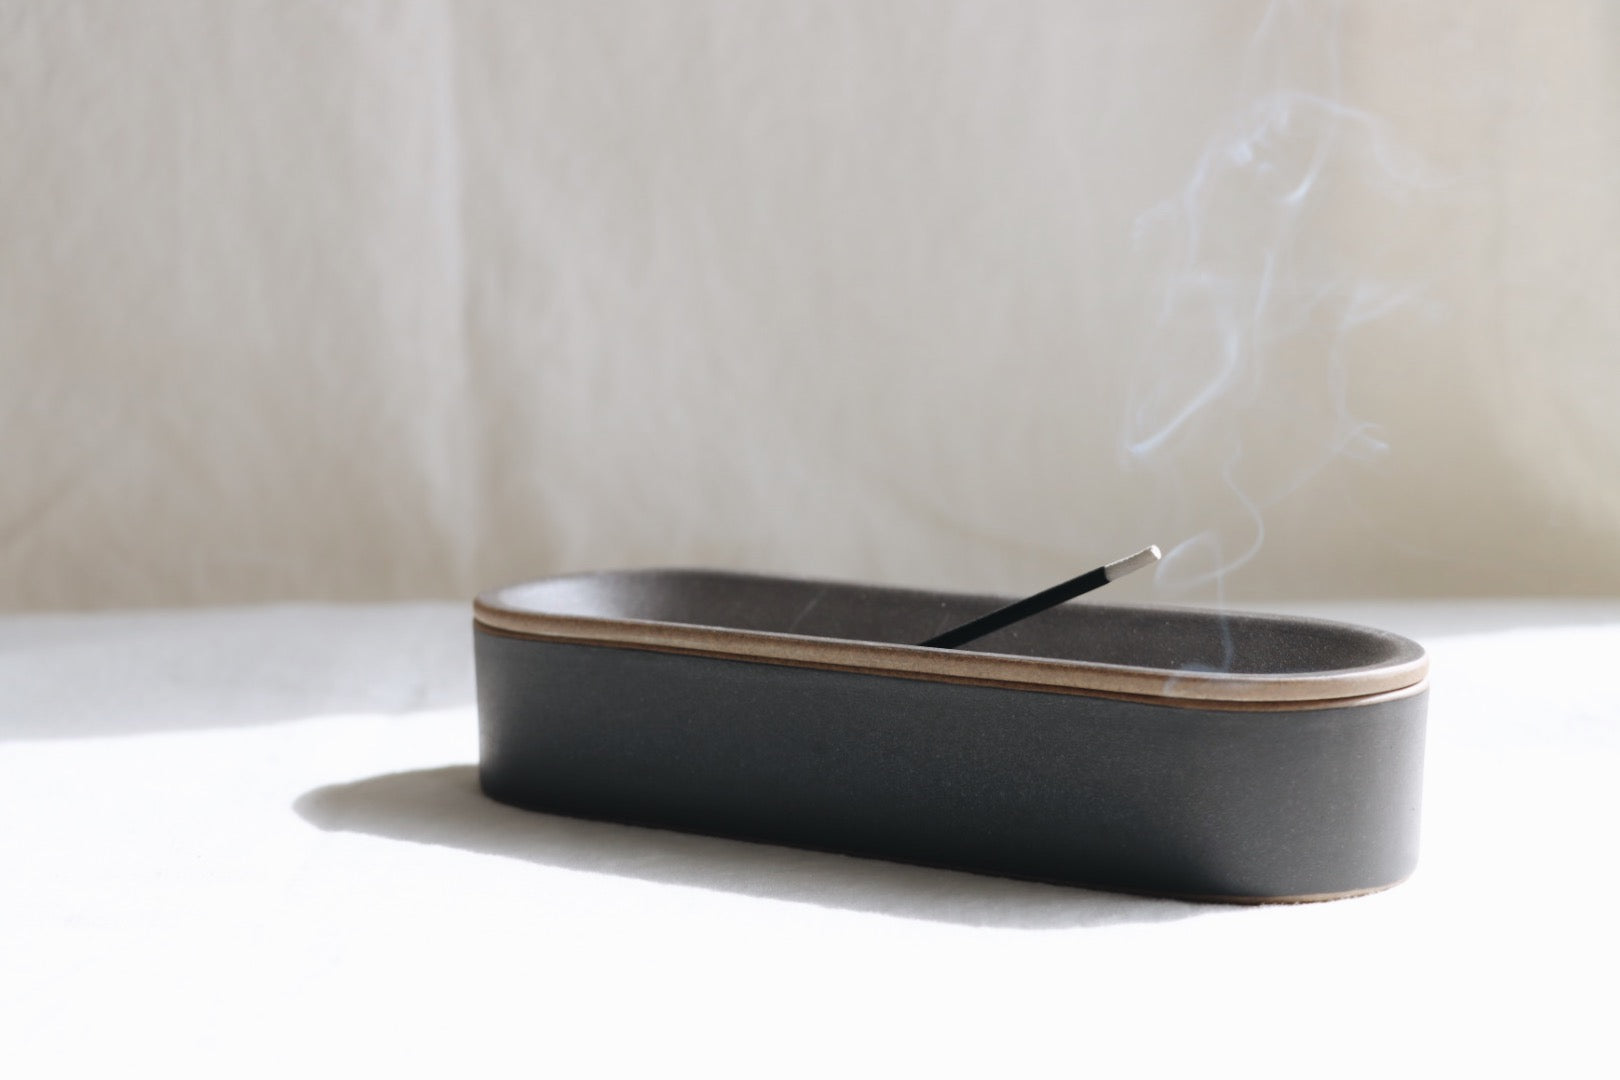 Hasami Incense Burner